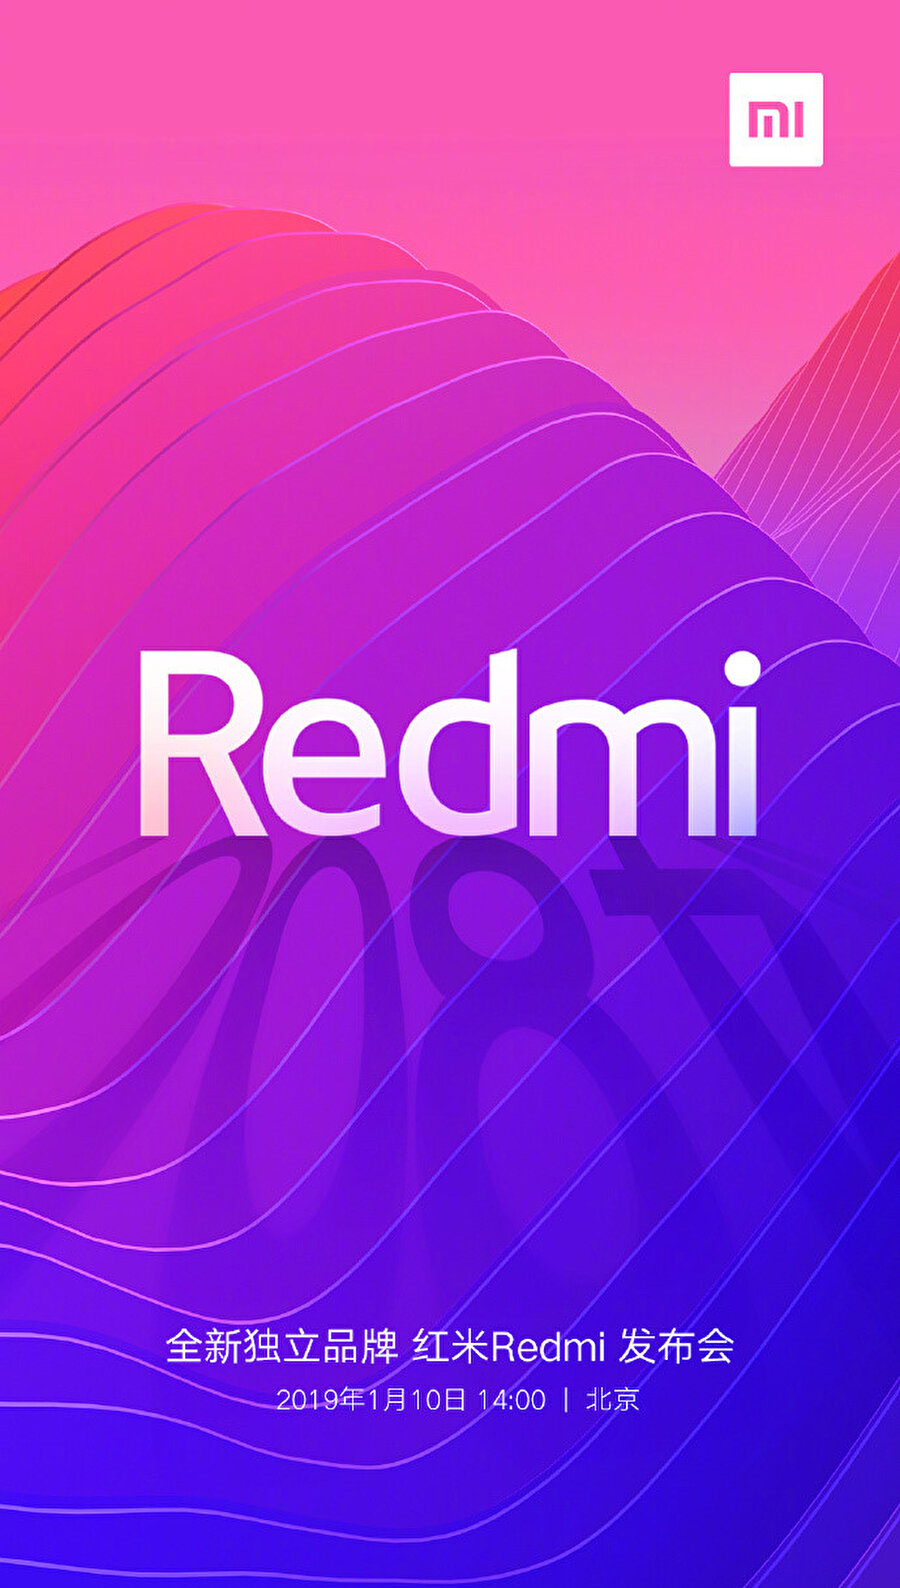 Xiaomi'nin Weibo'da paylaştığı Redmi marka görselinde tanıtım etkinliğinin 10 Ocak'ta gerçekleşeceği belirtiliyor. 